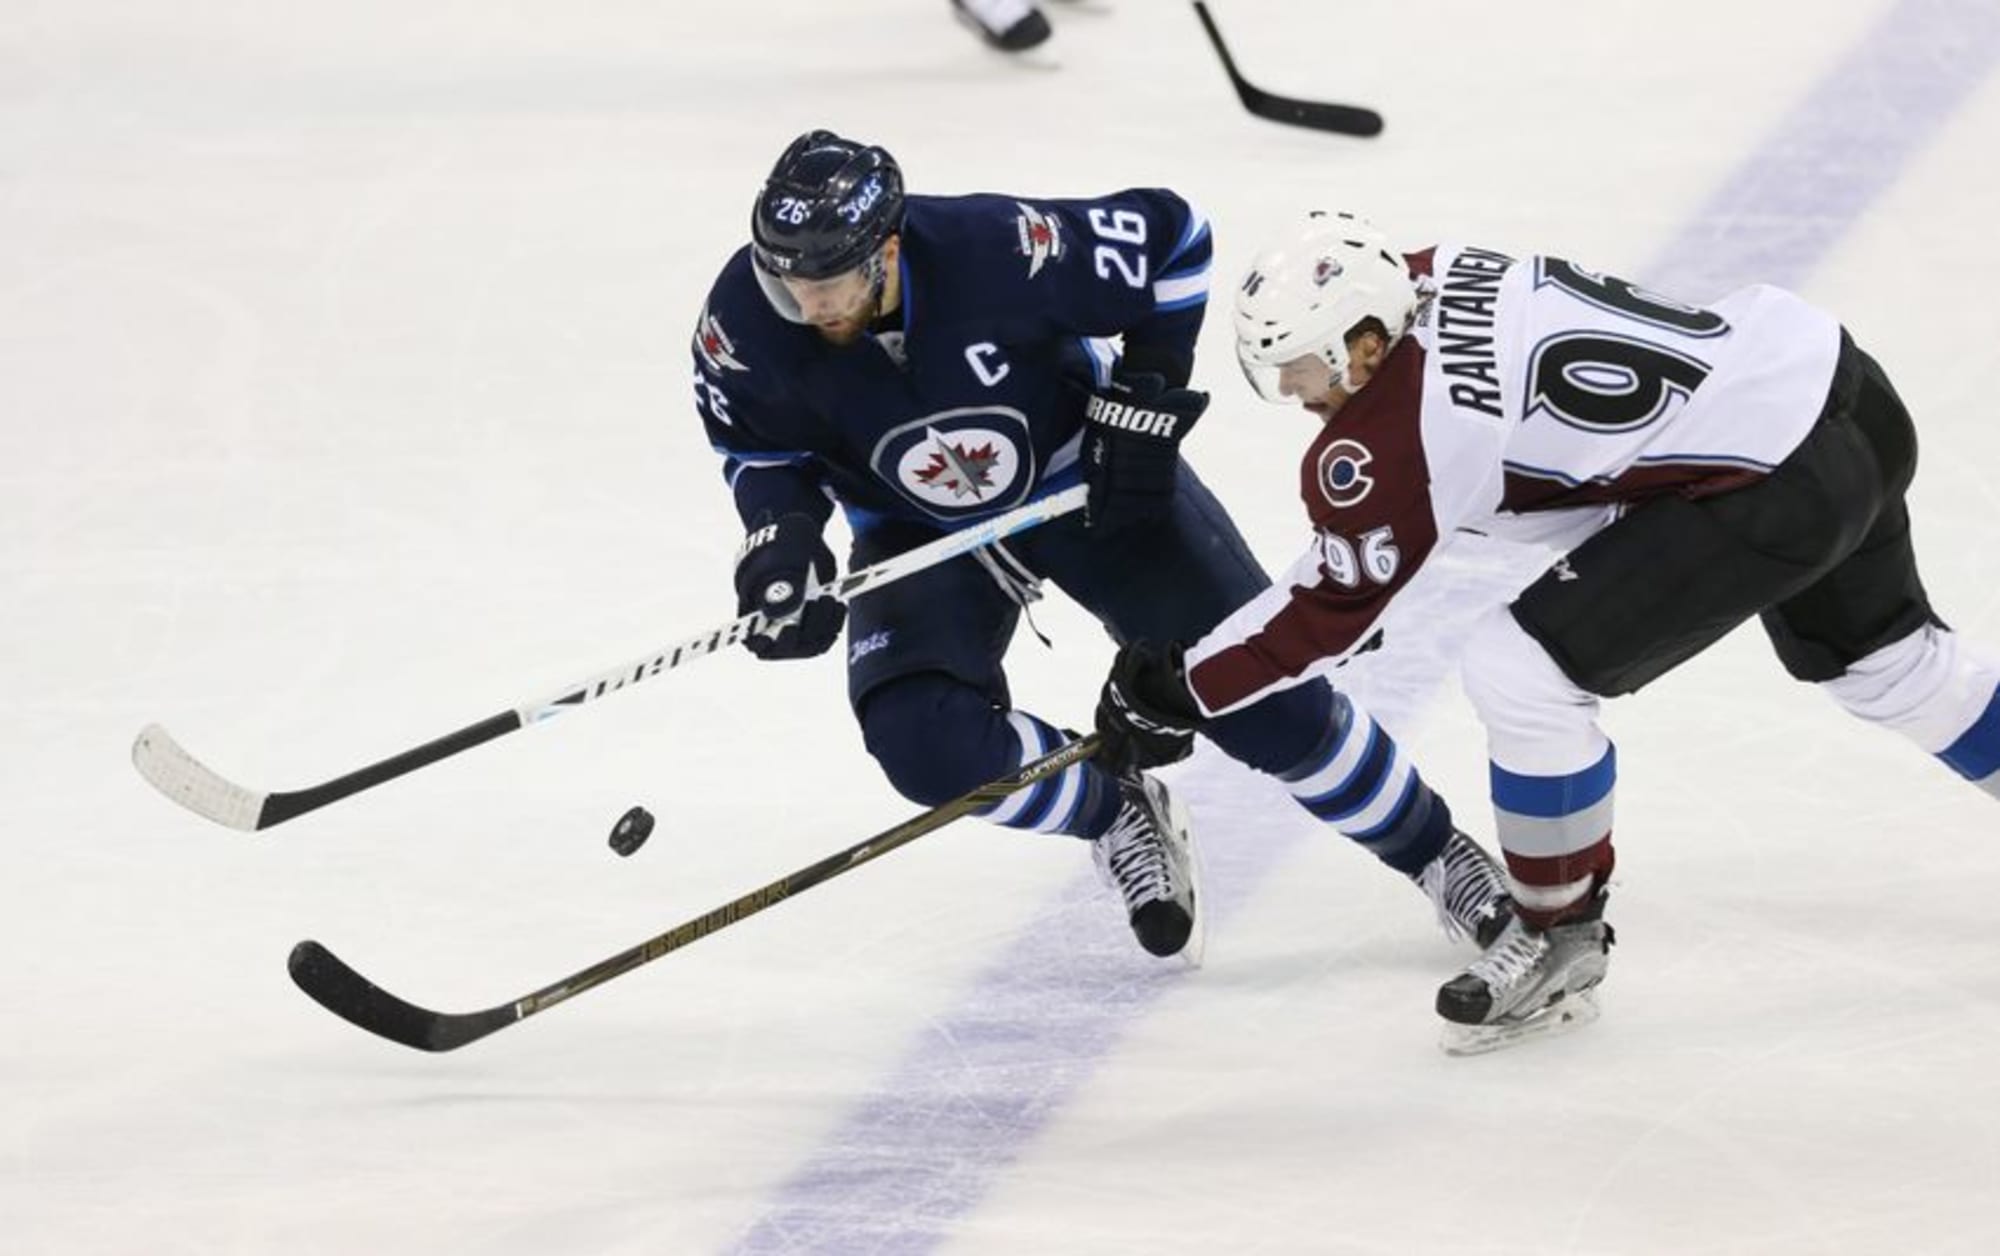 Winnipeg Jets right winger Blake Wheeler (26) skates during an NHL